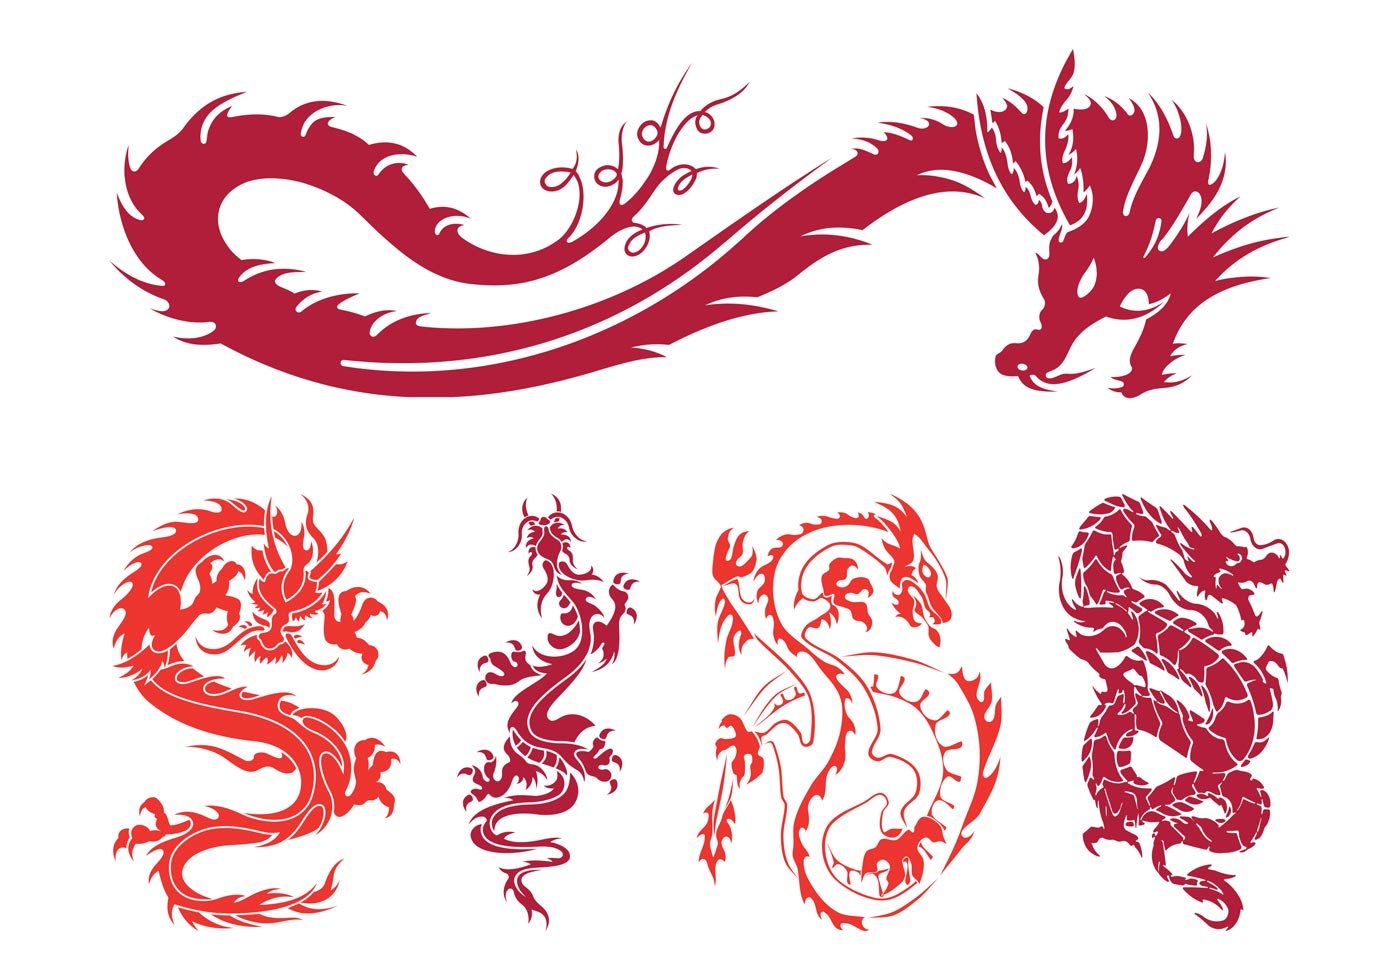 Dragon graphics. Стилизованное изображение дракона. Стилизованный дракон. Дракон орнамент. Китайский дракон.